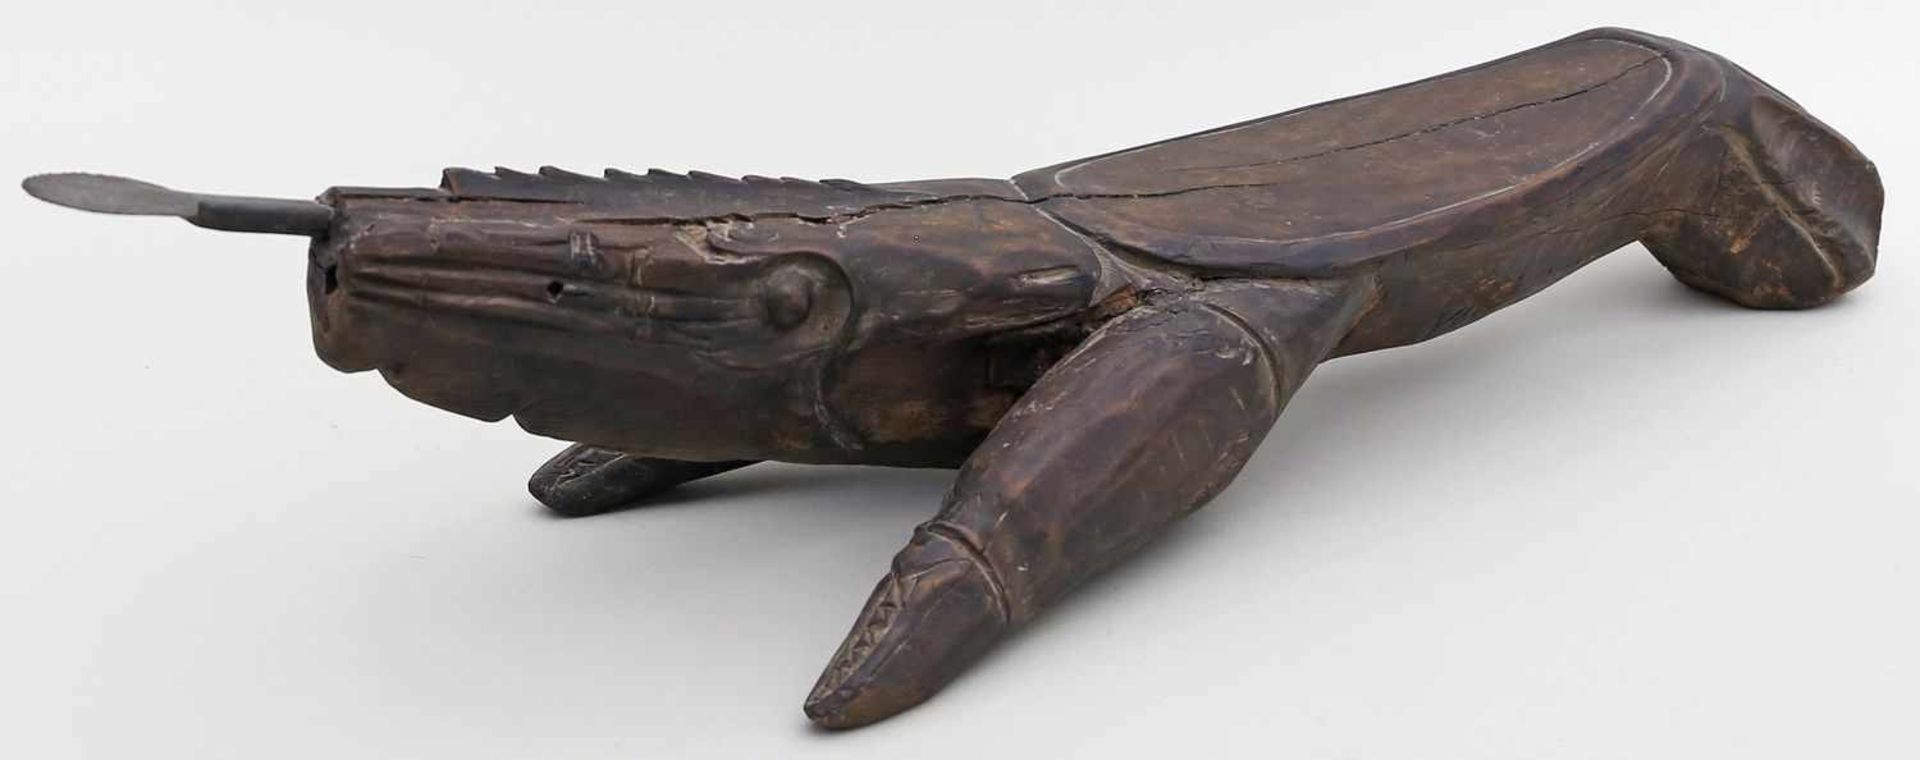 Kokosnuss-Raspler bzw. -Spalter in Form eines Sitzes.Holz, dunkel gefasst. Geschnitzt wohl in Form